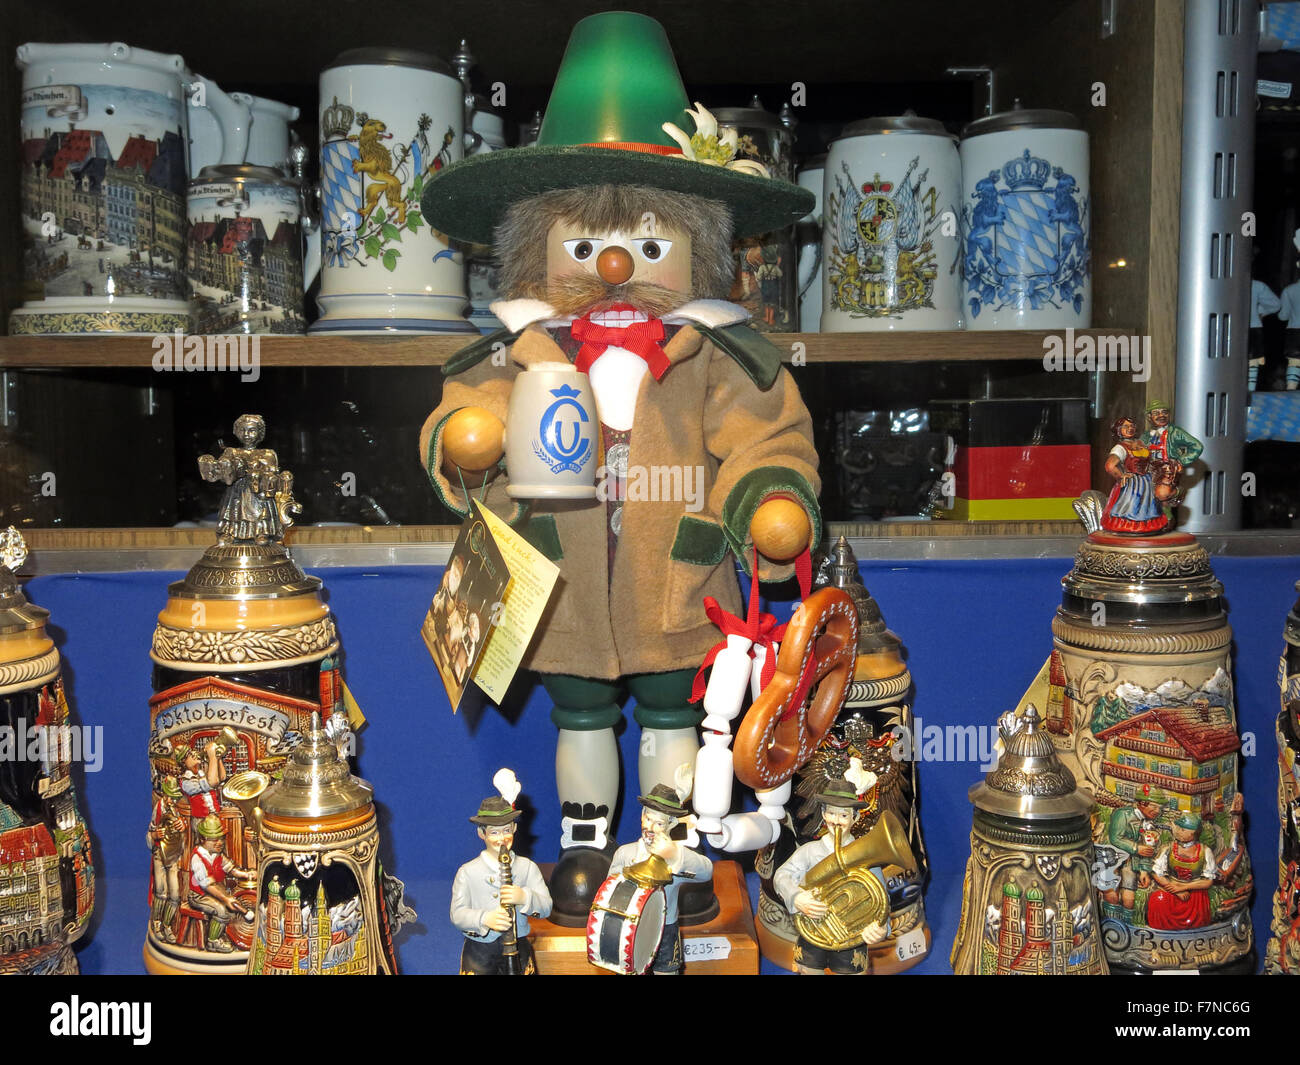 Affichage de vitrine de l'Oktoberfest, Munich, Allemagne ; Stein, poupées, T-shirts et autres souvenirs Banque D'Images